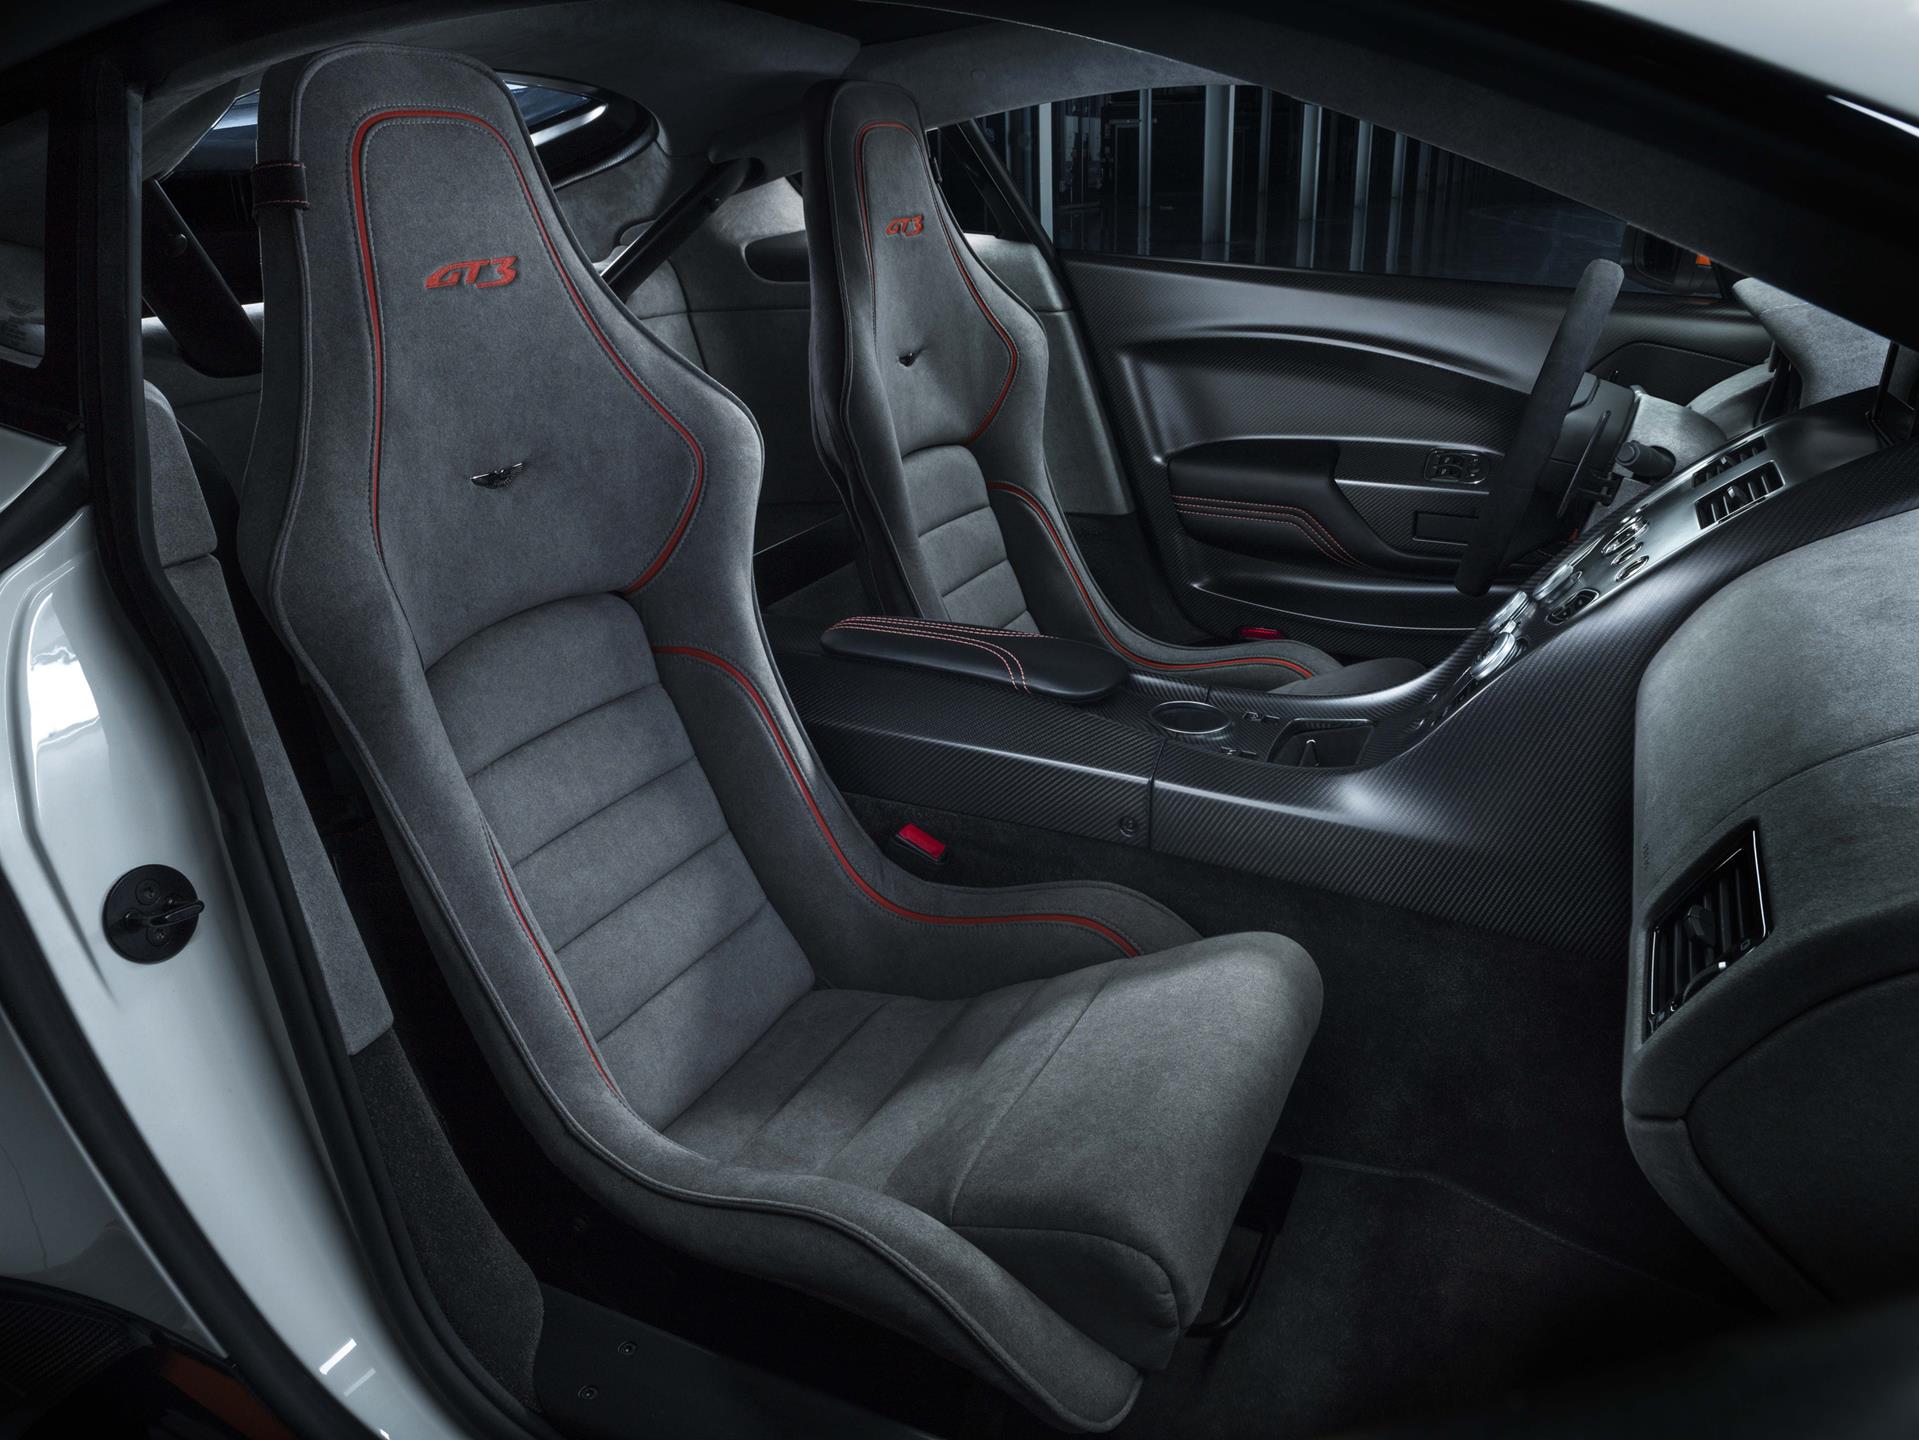 2014 Aston Martin Vantage GT3 Special Edition